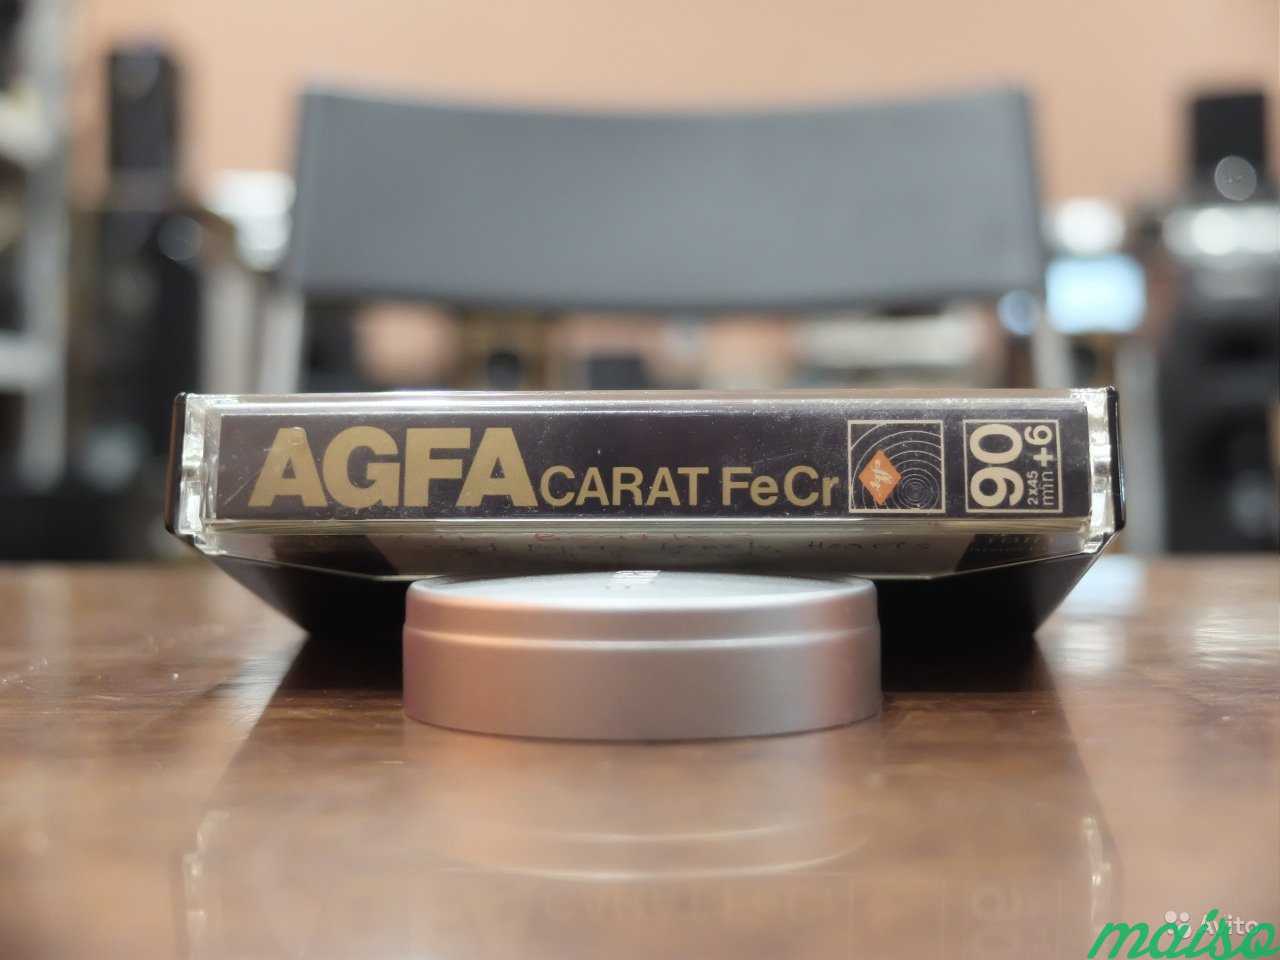 Аудио кассета Agfa Carat FeRRum Chome III 90 1шт в Санкт-Петербурге. Фото 2